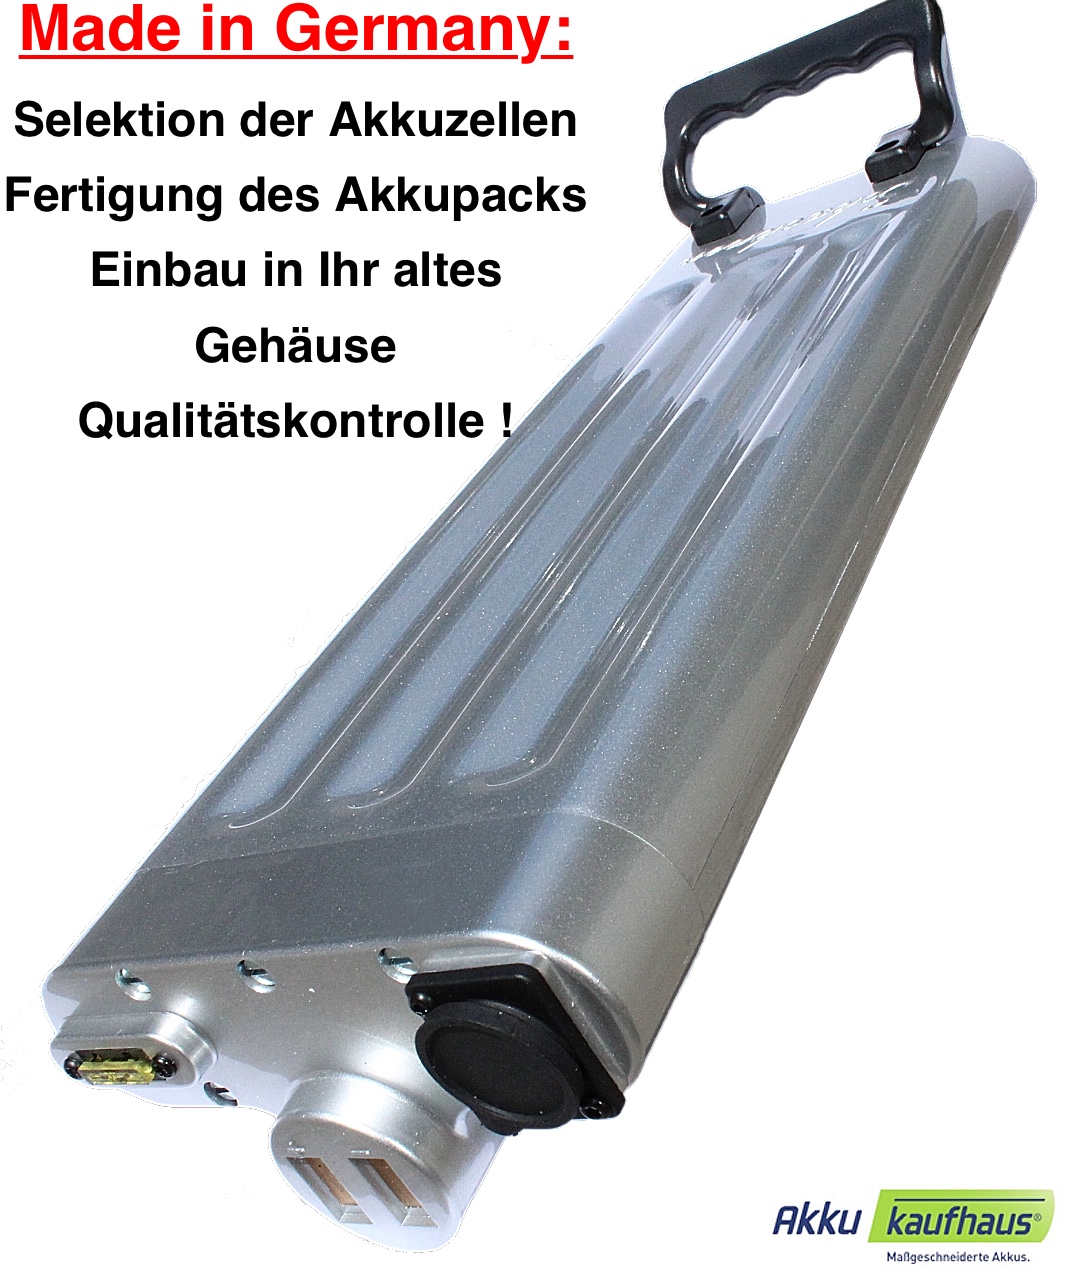 36V 10AH ebike LFP Akku Made in Germany (MiG) für Schachner silbernes Gehäuse inkl. Einbau in Ihr Ge